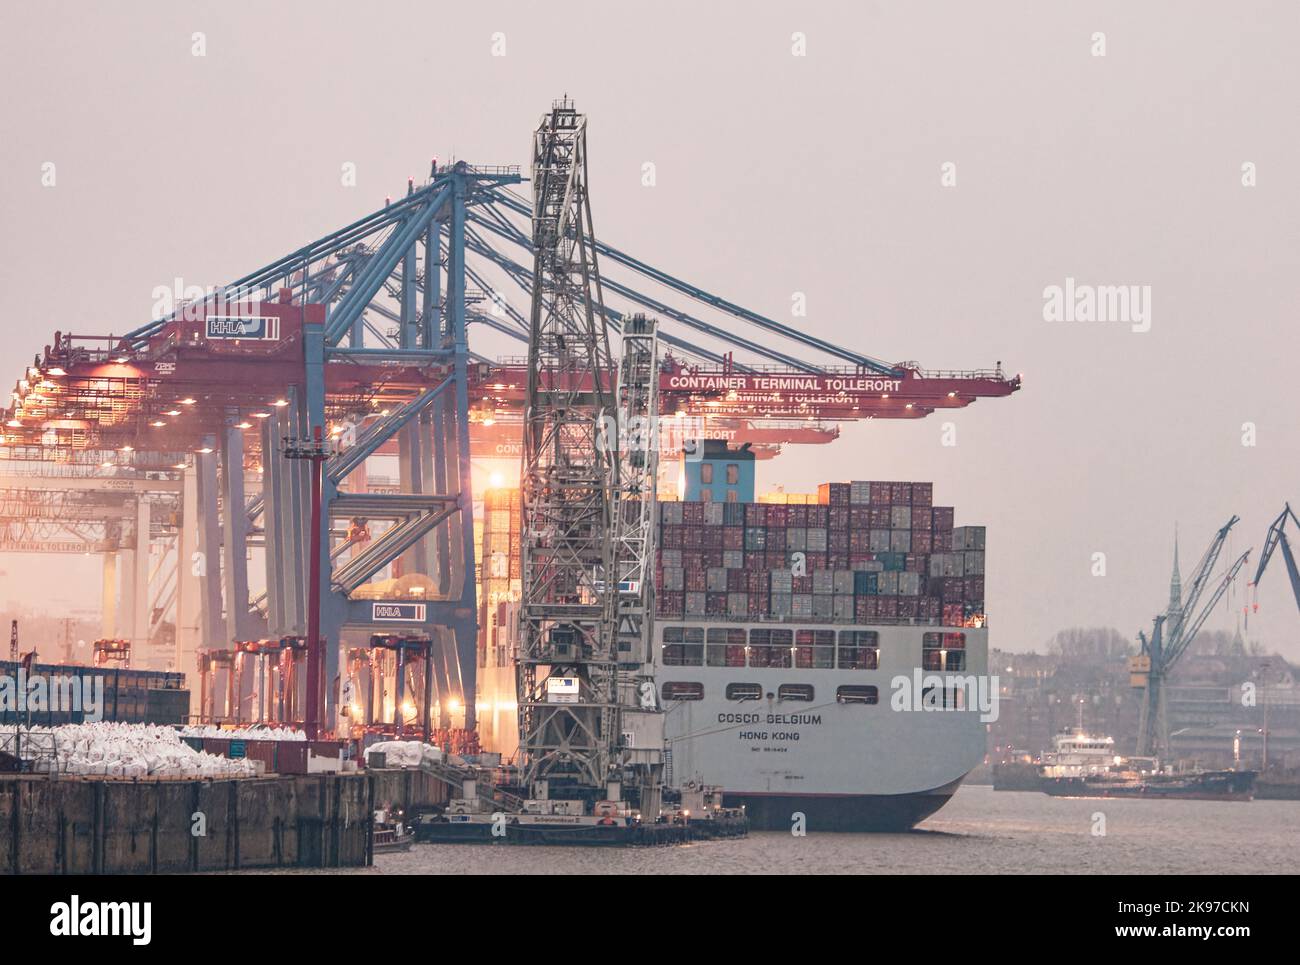 Hambourg, Allemagne - 23 février 2014: Cosco Container Ship dans le port de Hambourg à Container Termninal Tollerort. Banque D'Images